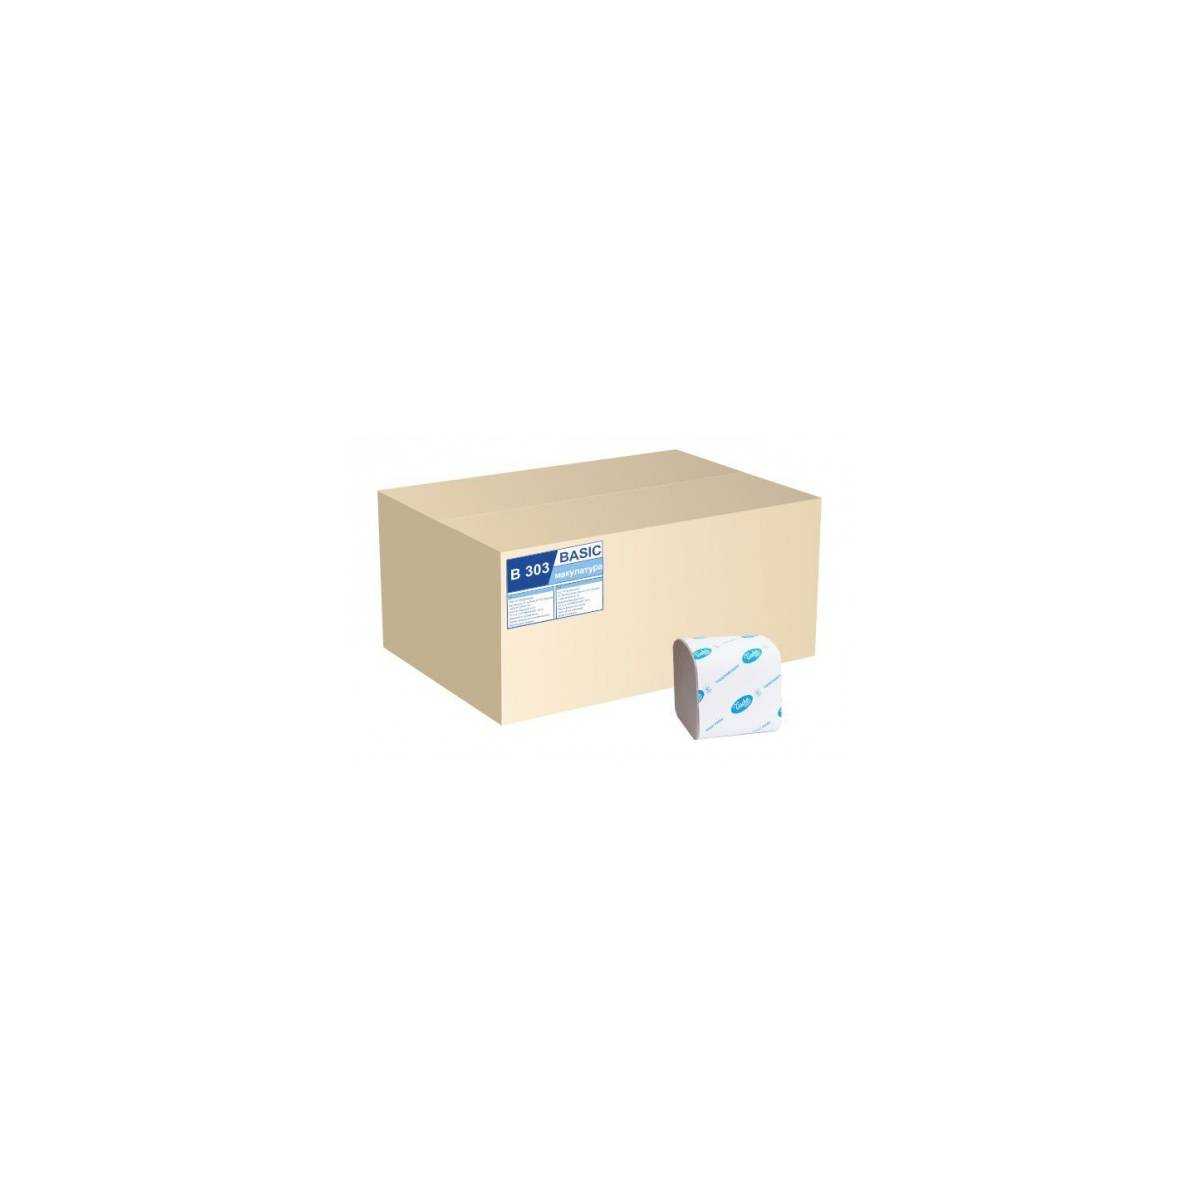 Туалетная бумага в пачке BASIC (ящик/40 пачок по 200 листків) В303 Tischa Papier